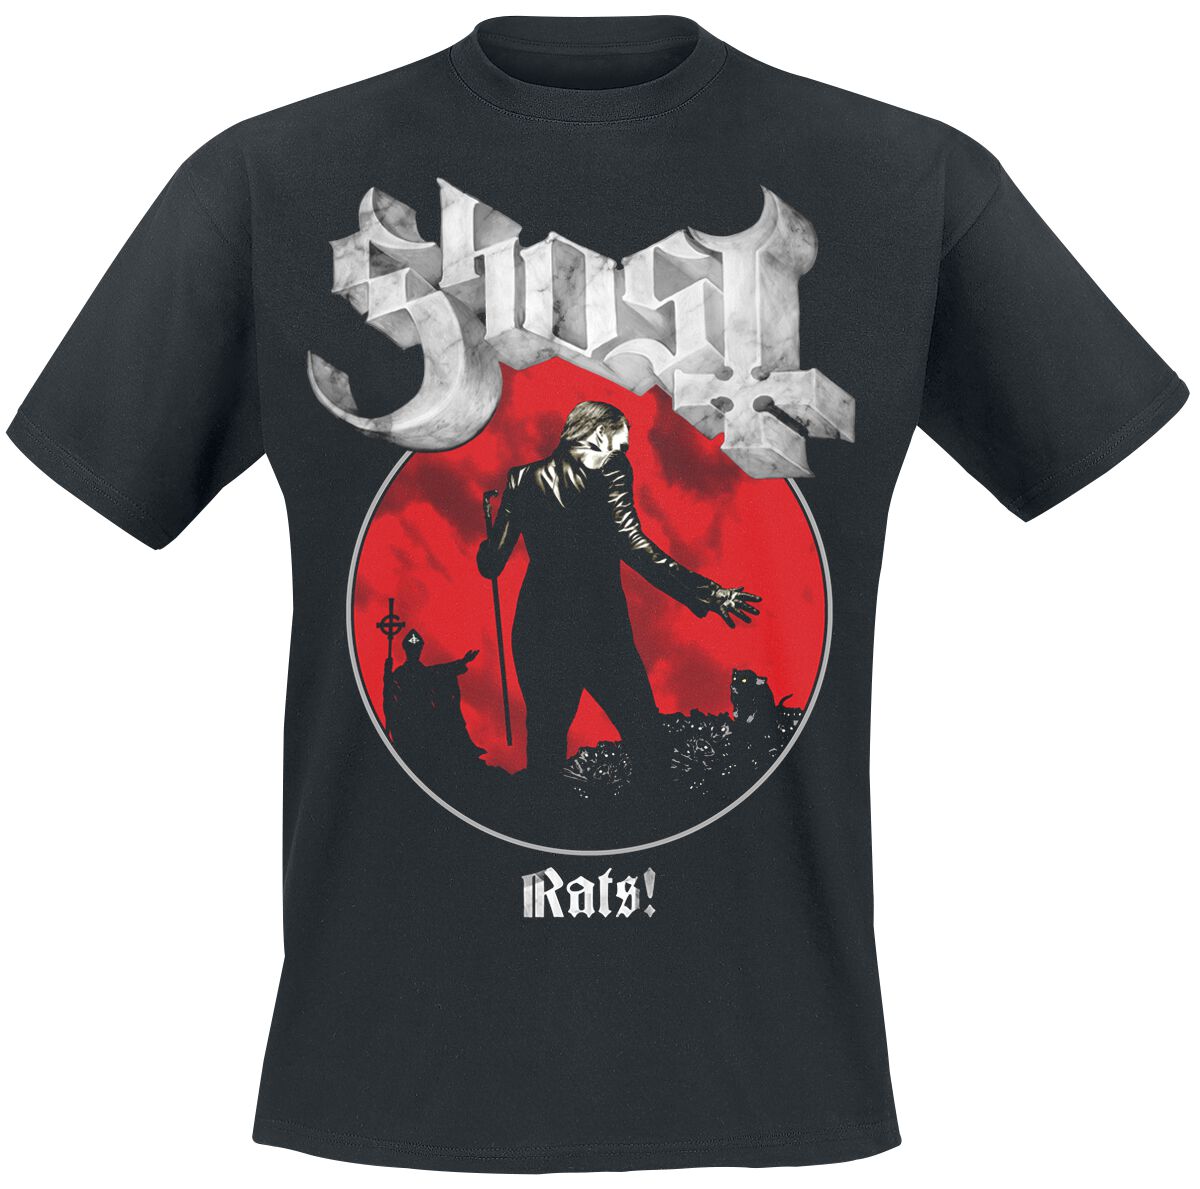 Ghost T-Shirt - Rats Admat - S bis XXL - für Männer - Größe S - schwarz  - Lizenziertes Merchandise!